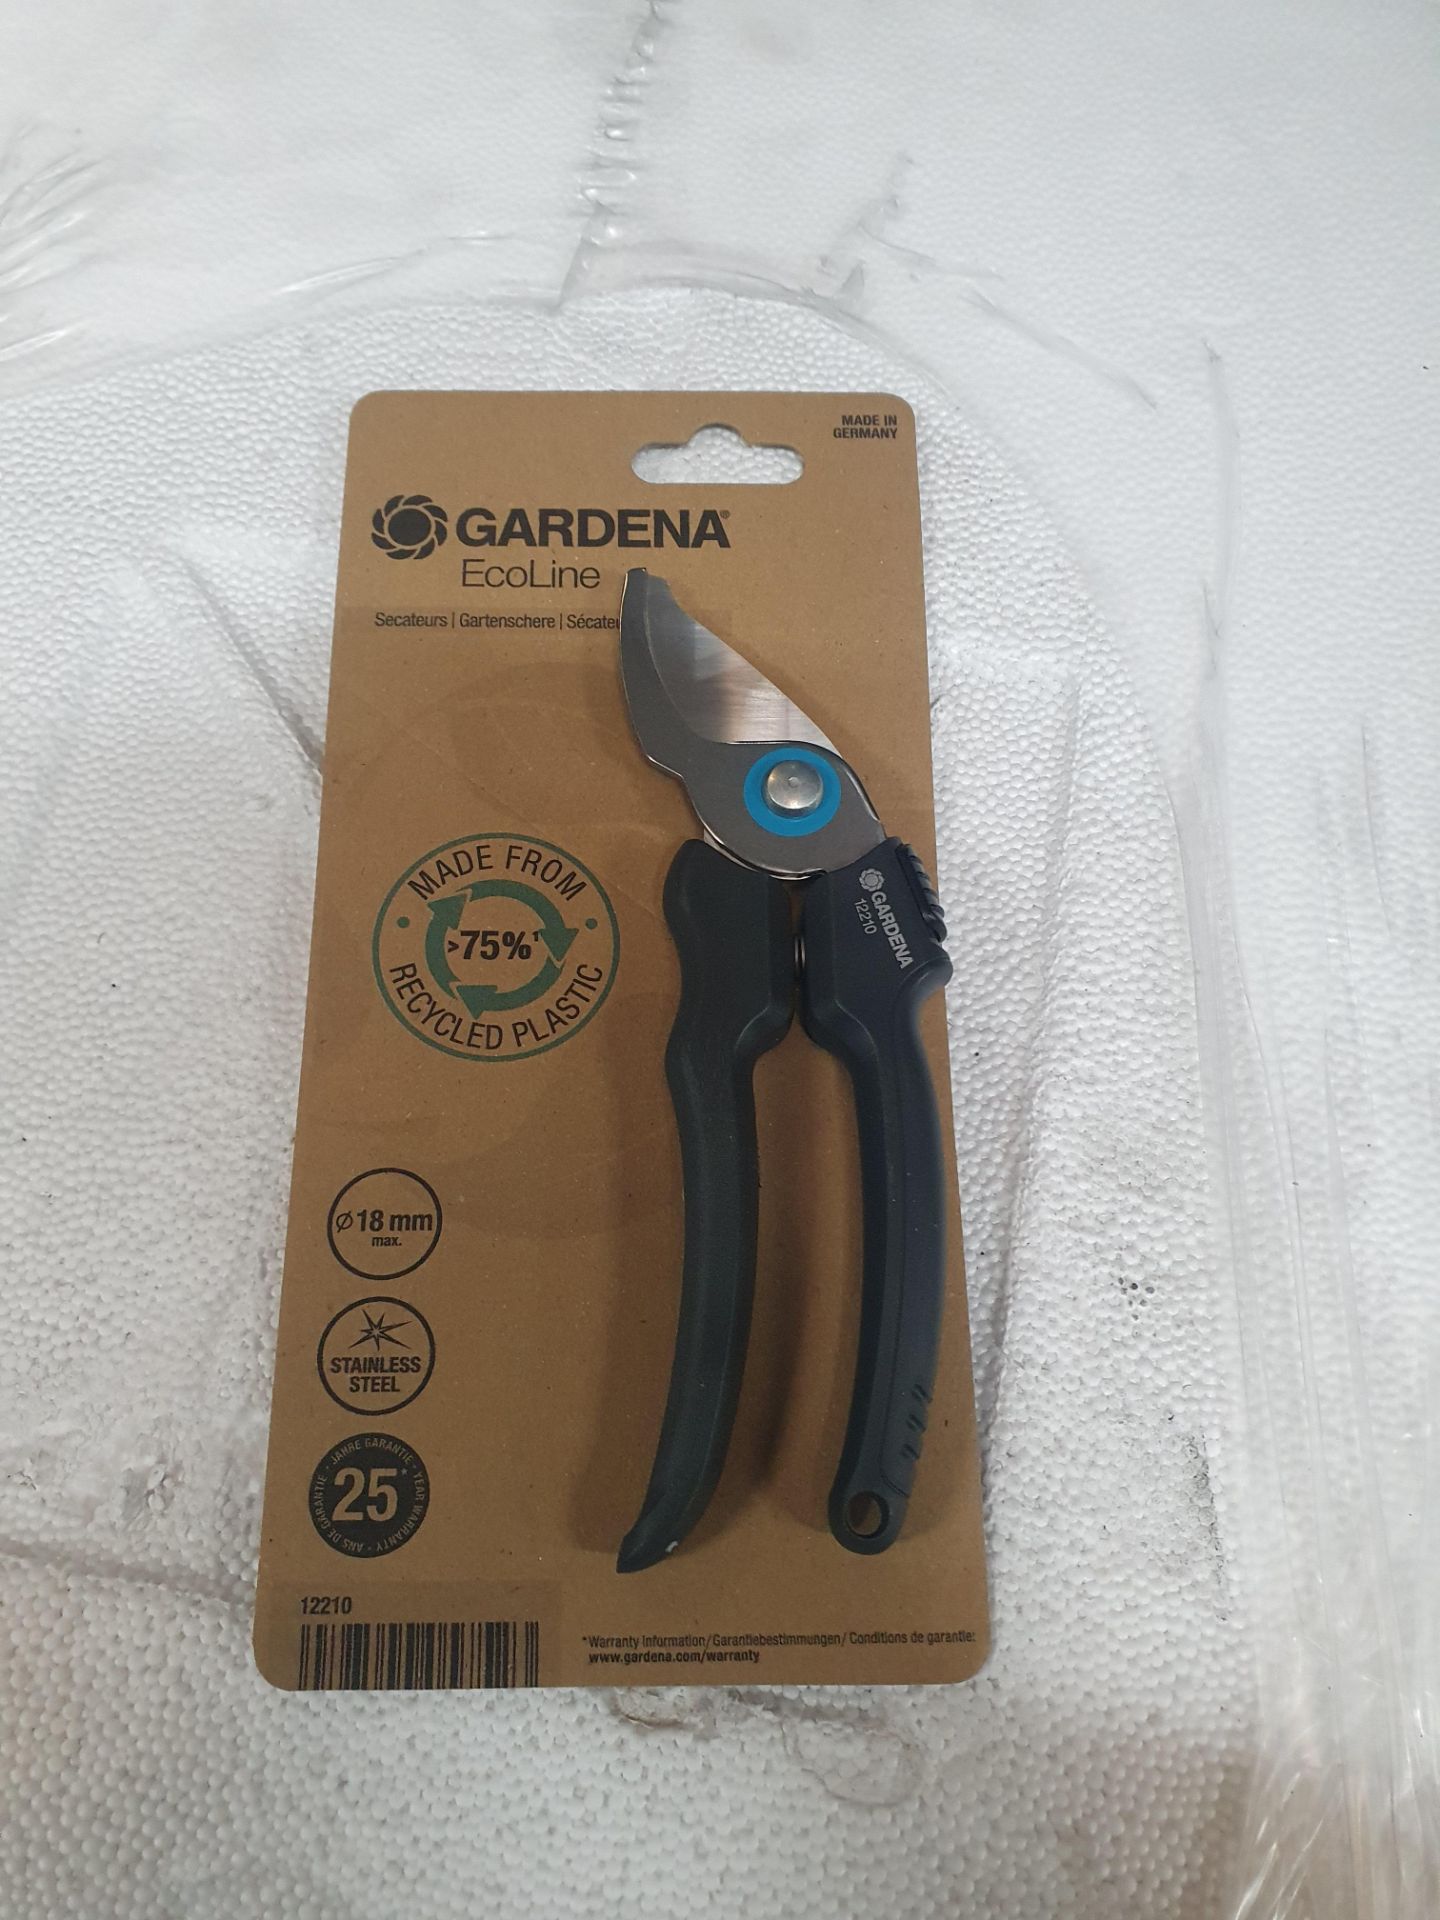 * Gardena Ecoline 12210 secateurs